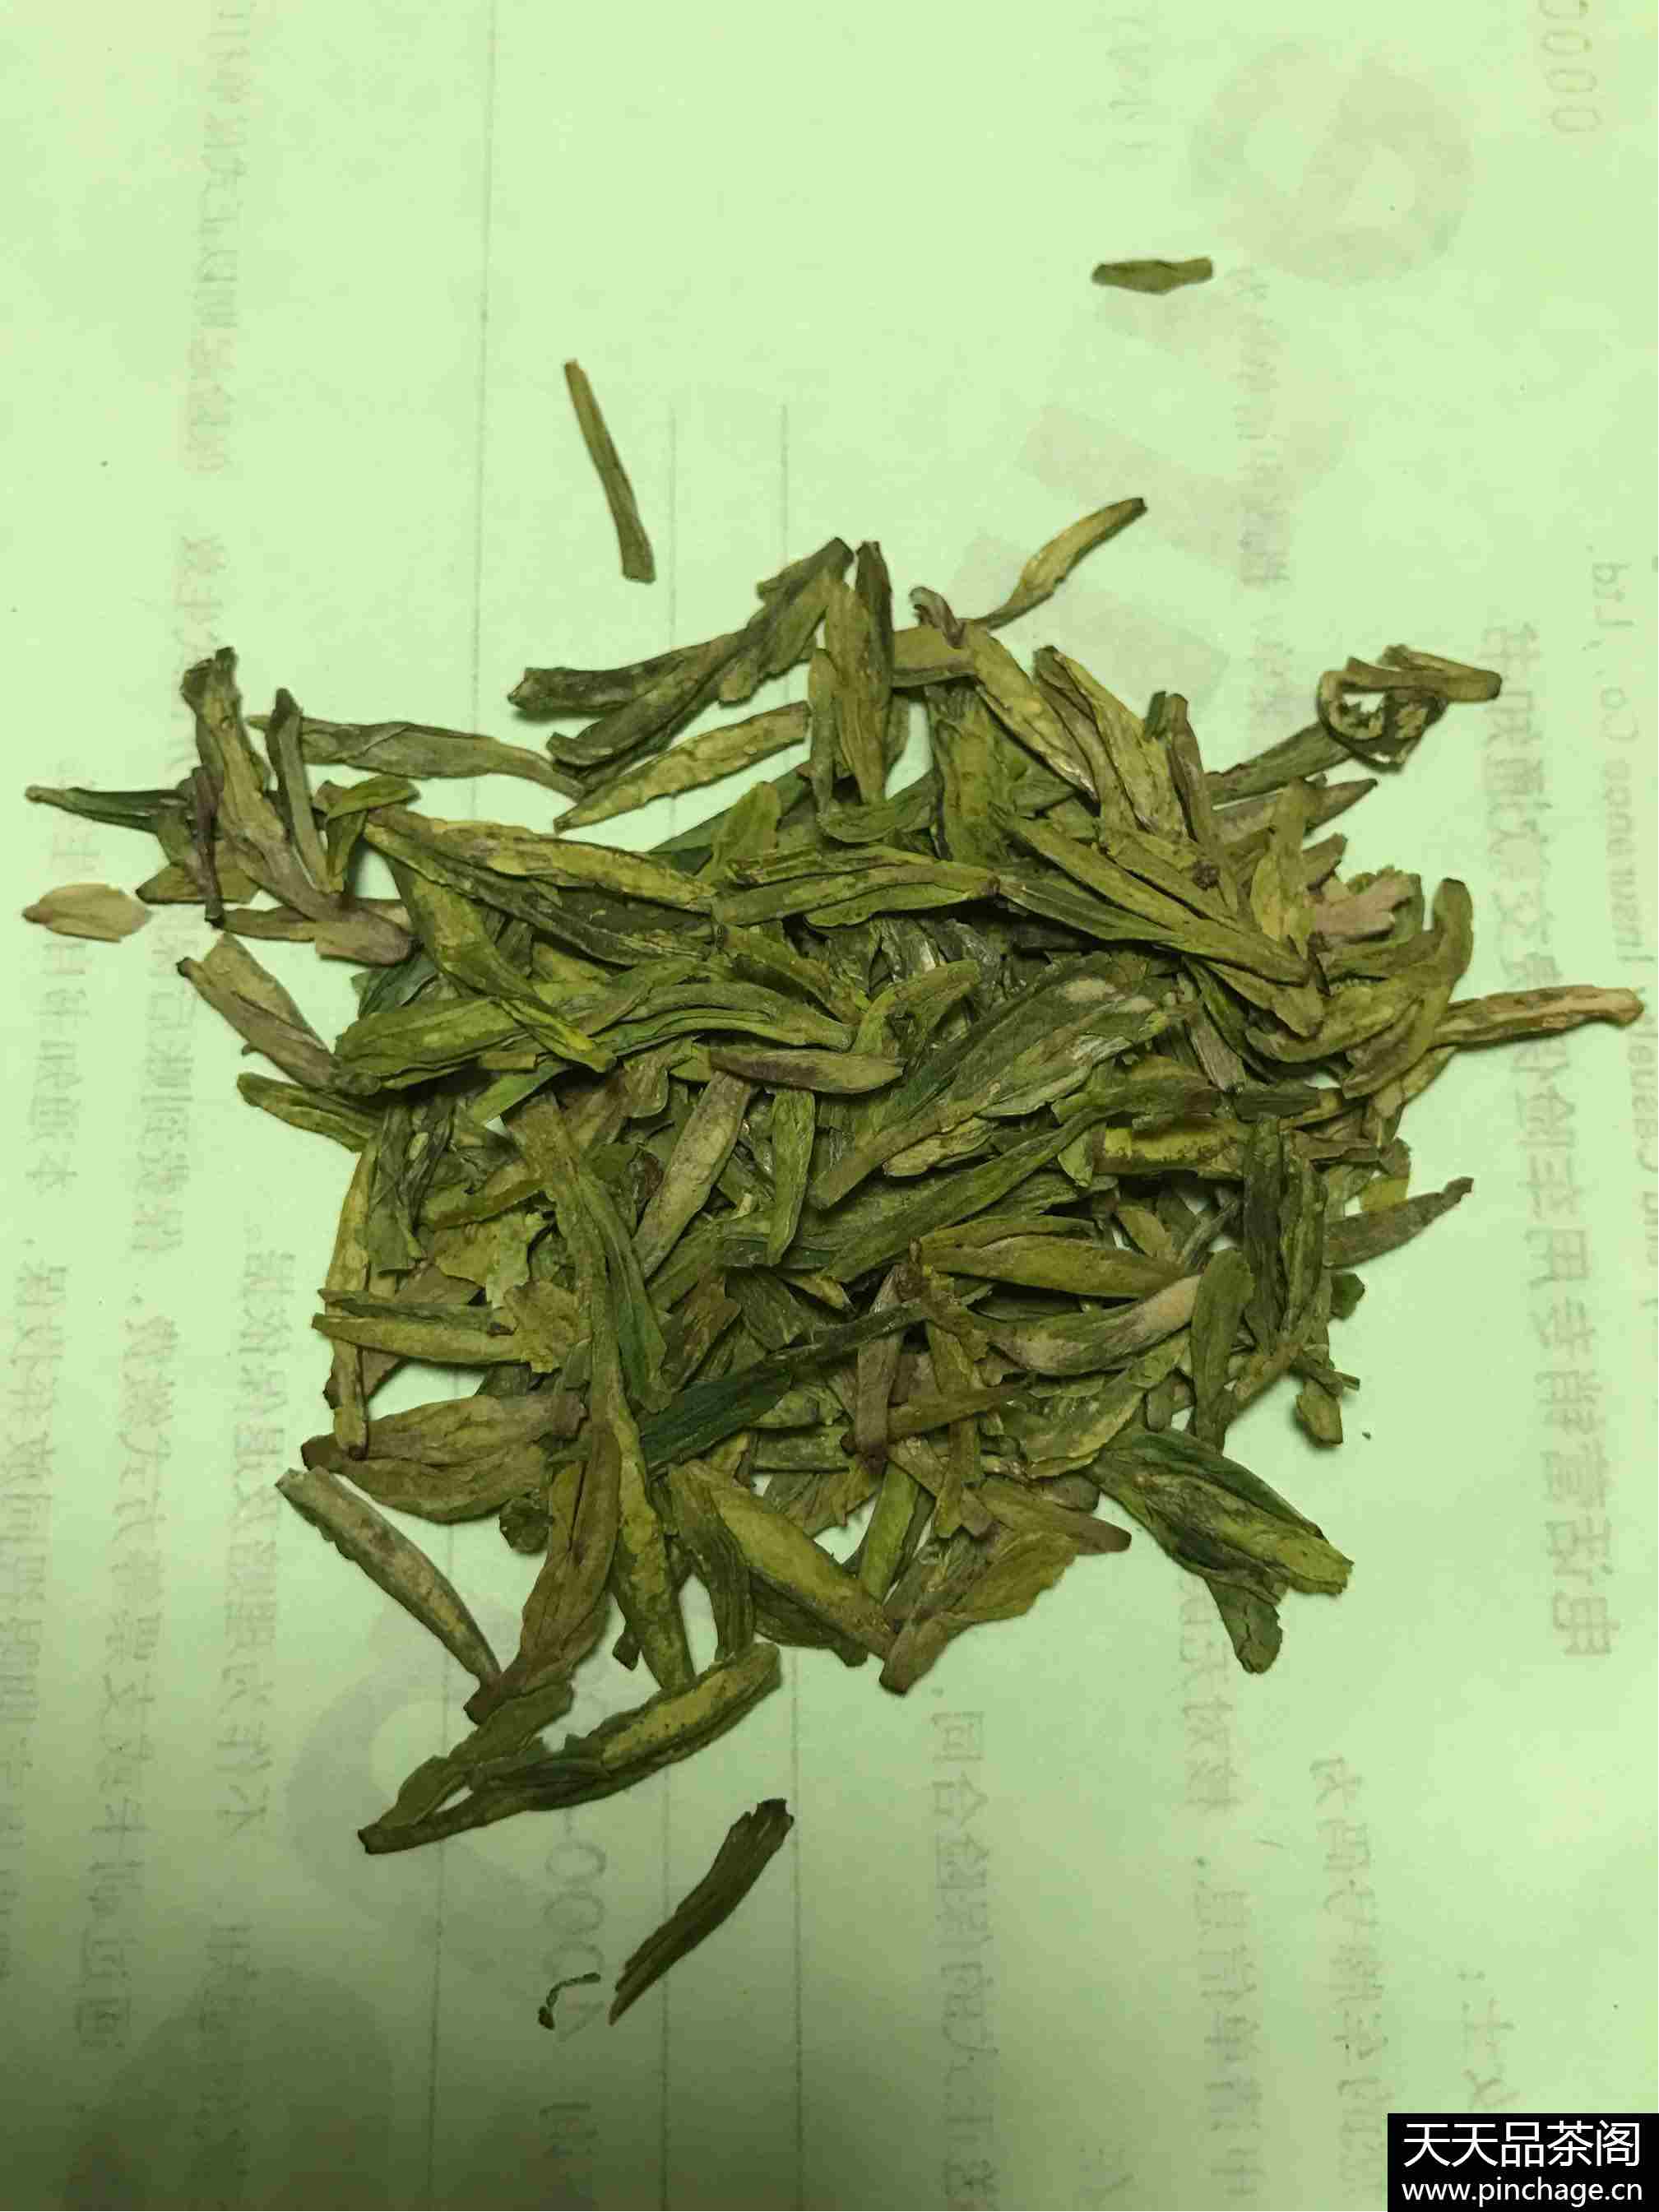 狮梅牌 明前特级西湖龙井茶